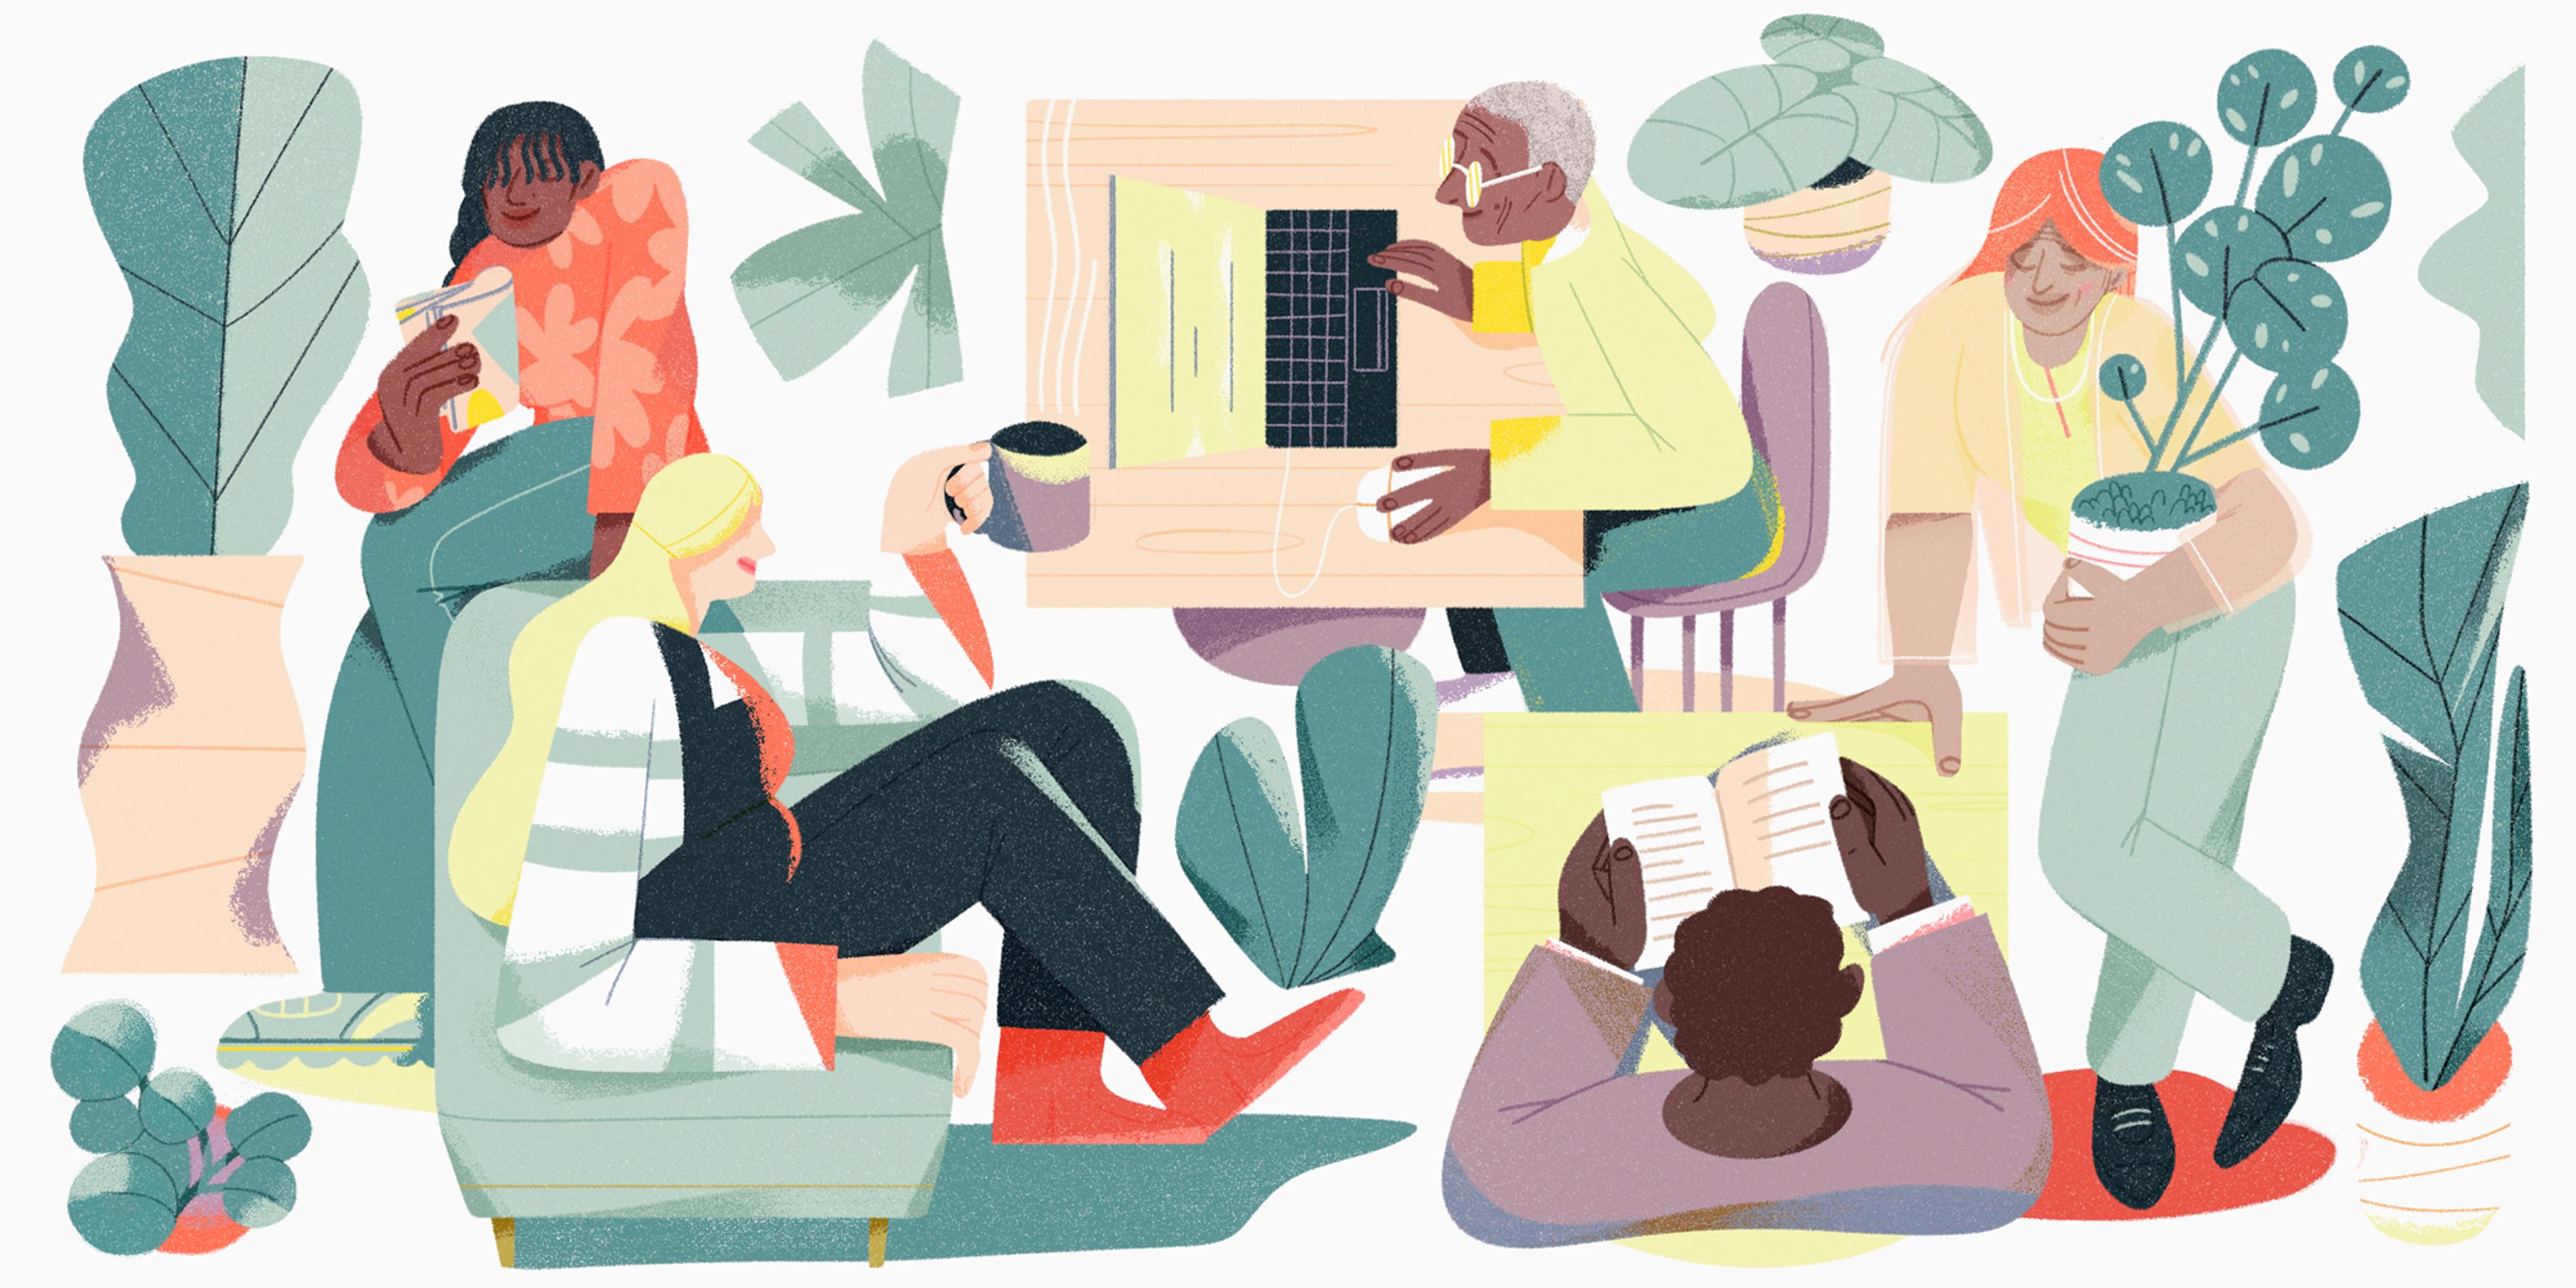 Une illustration représentant six personnes au cabinet d’ergothérapie en santé mentale L-Étagère à Lausanne engagées dans diverses activités telles que lire, utiliser un ordinateur portable, boire du café et s'occuper des plantes dans un cadre intérieur confortable.